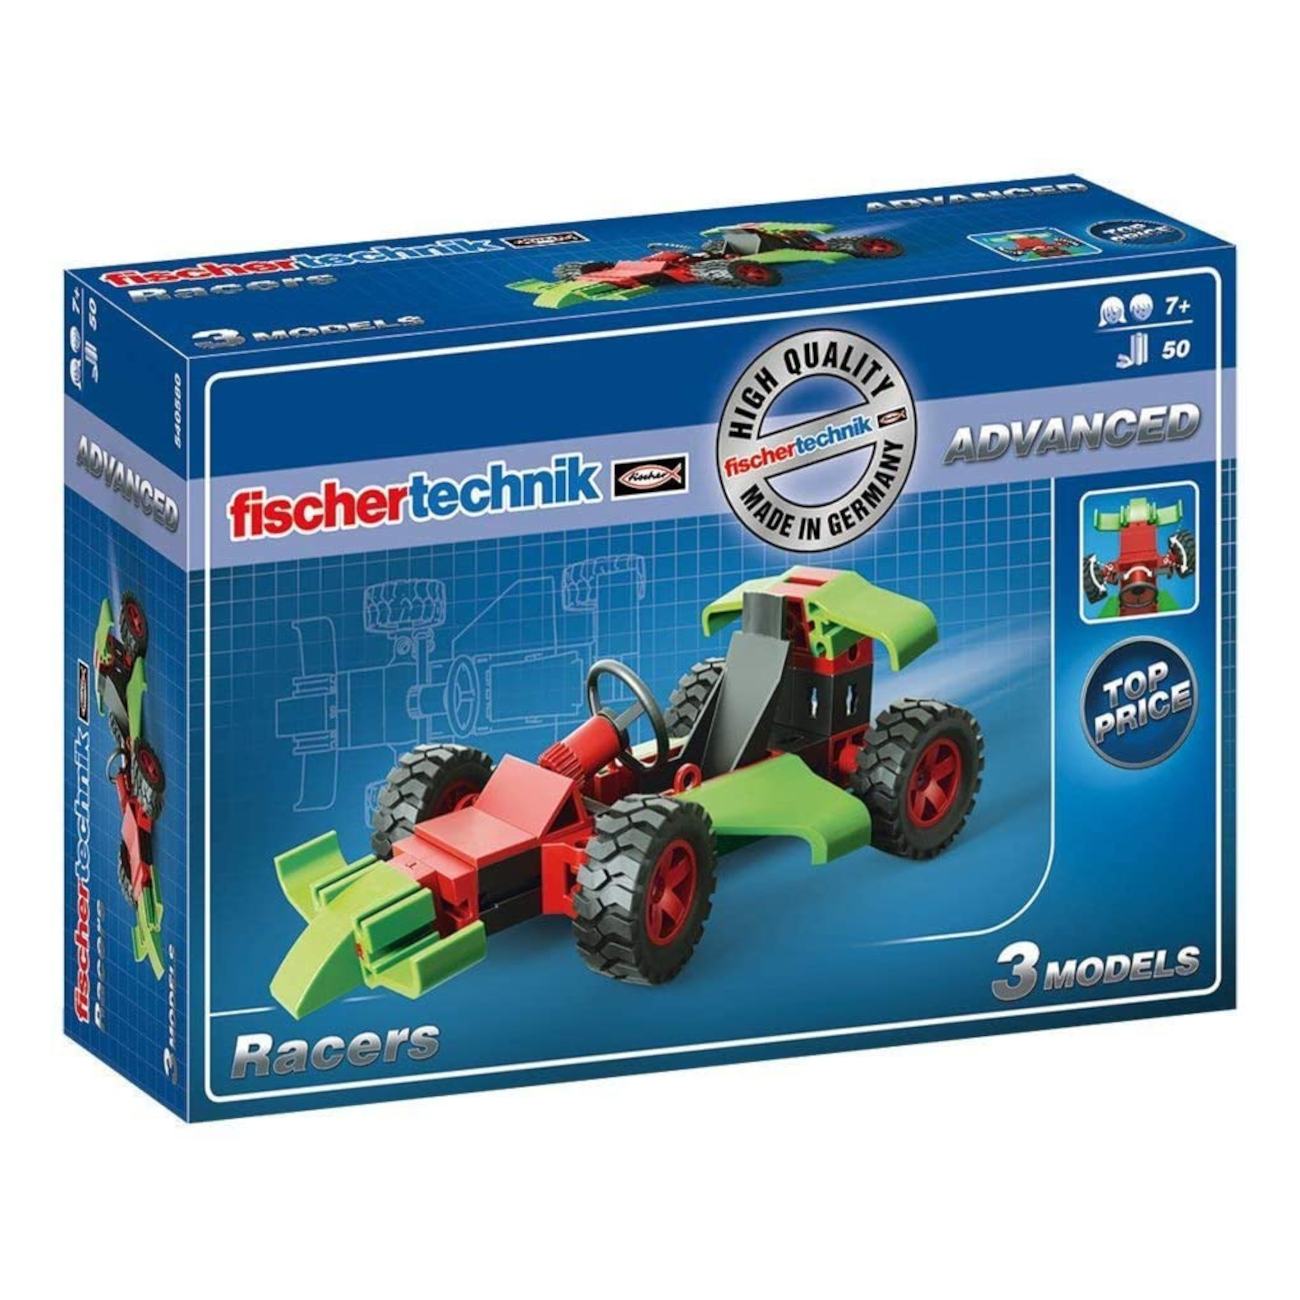 fischertechnik 540580 - Racers (Advanced)